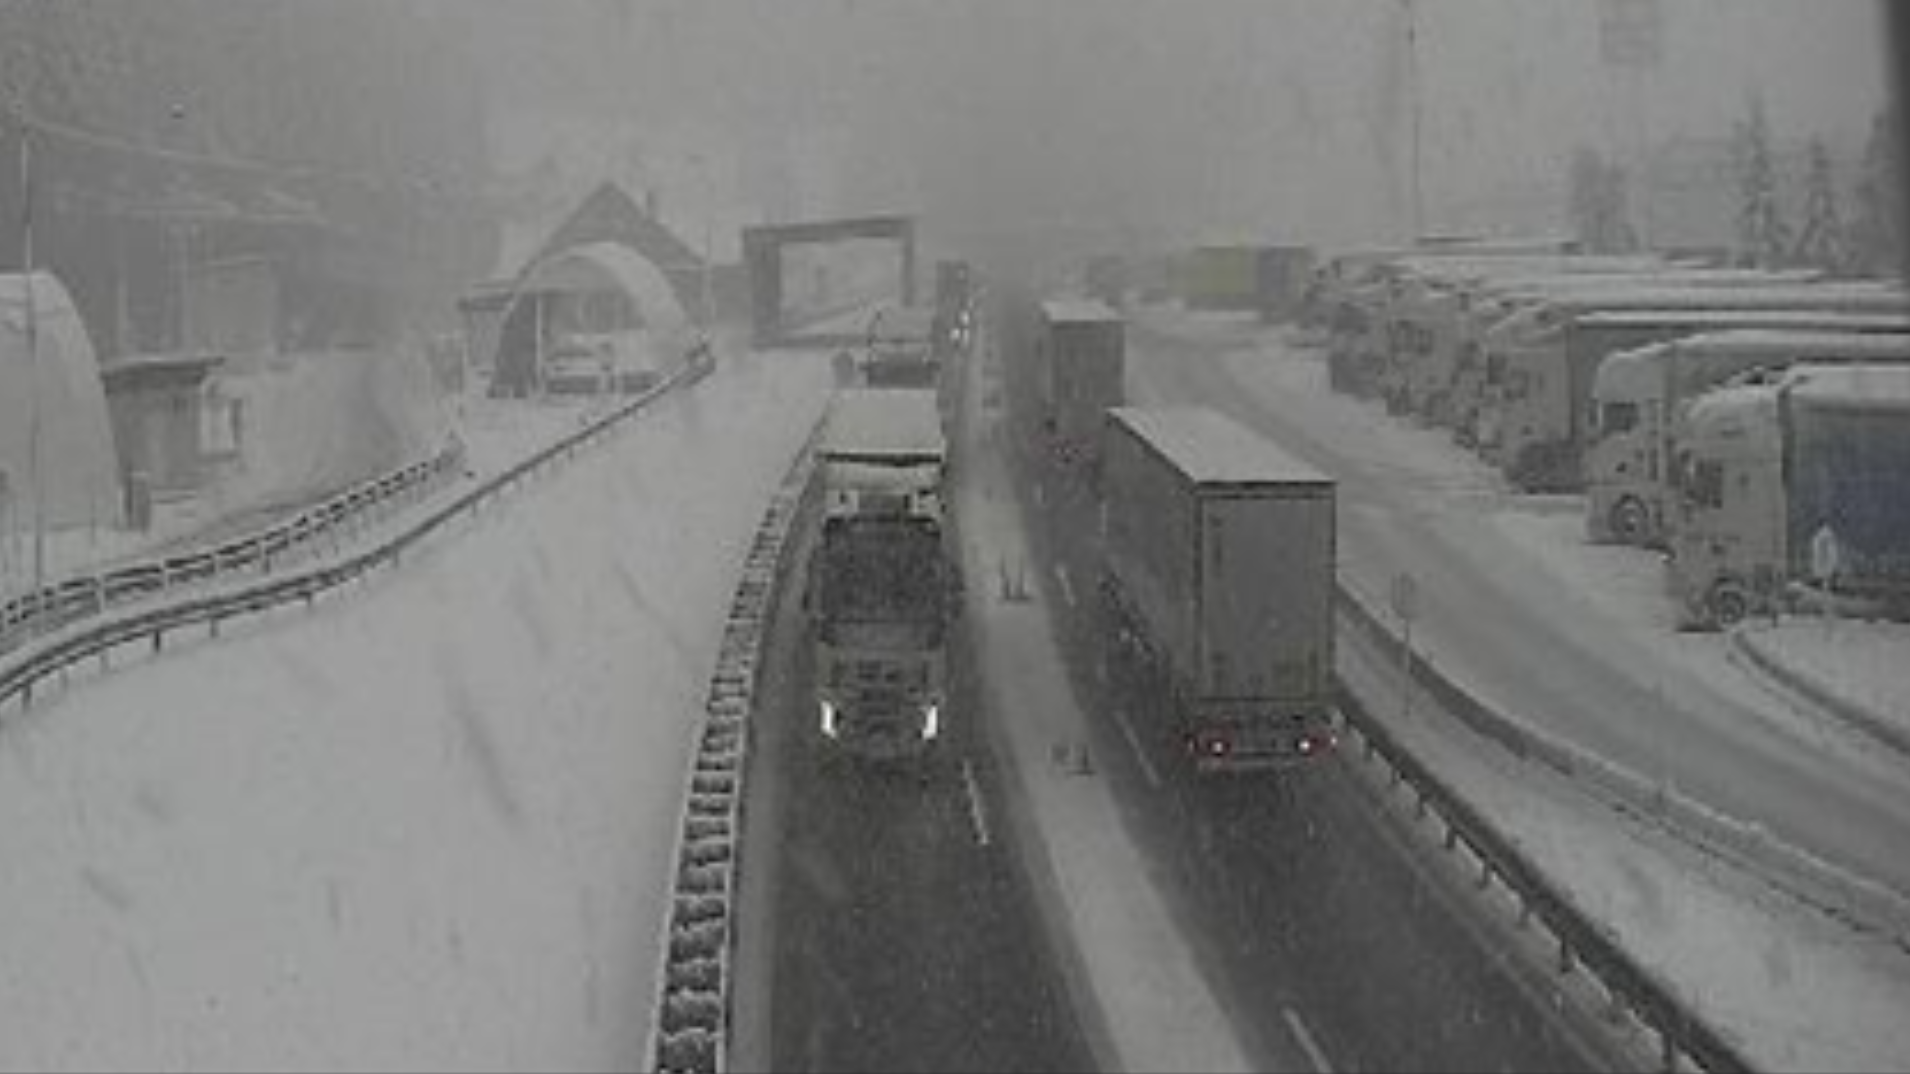 Am Brenner herrschte Freitagfrüh teils dichtes Schneetreiben. (Bild: Asfinag (Webcam))